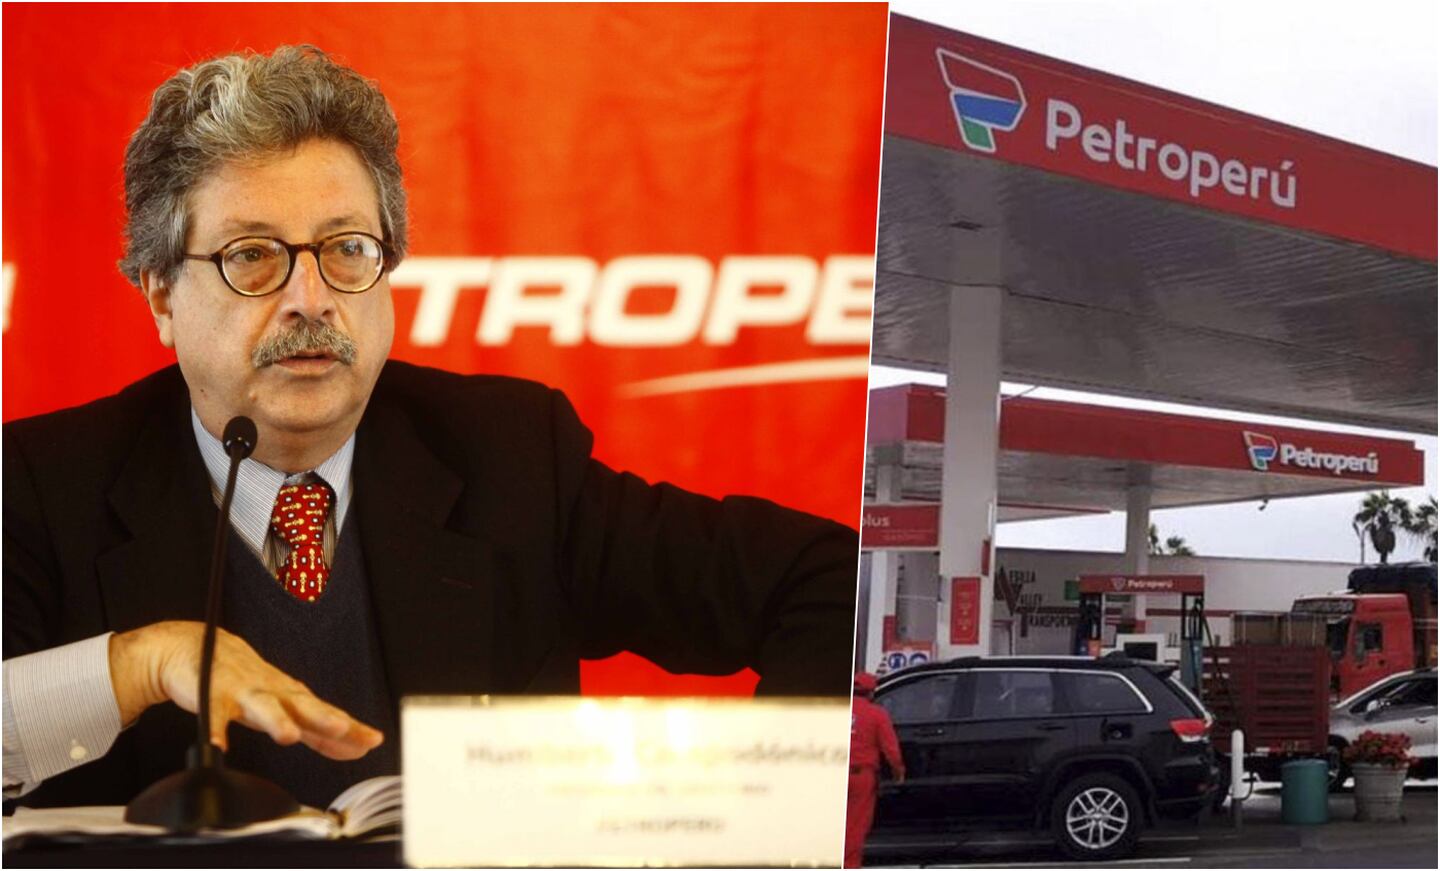 En agosto del 2011 Humberto Campodónico fue designado presidente de Petroperú, durante el gobierno de Ollanta Humala. Fue clave para el proceso de modernización de la Refinería de Talara. En enero del 2013 dejó dicho cargo.